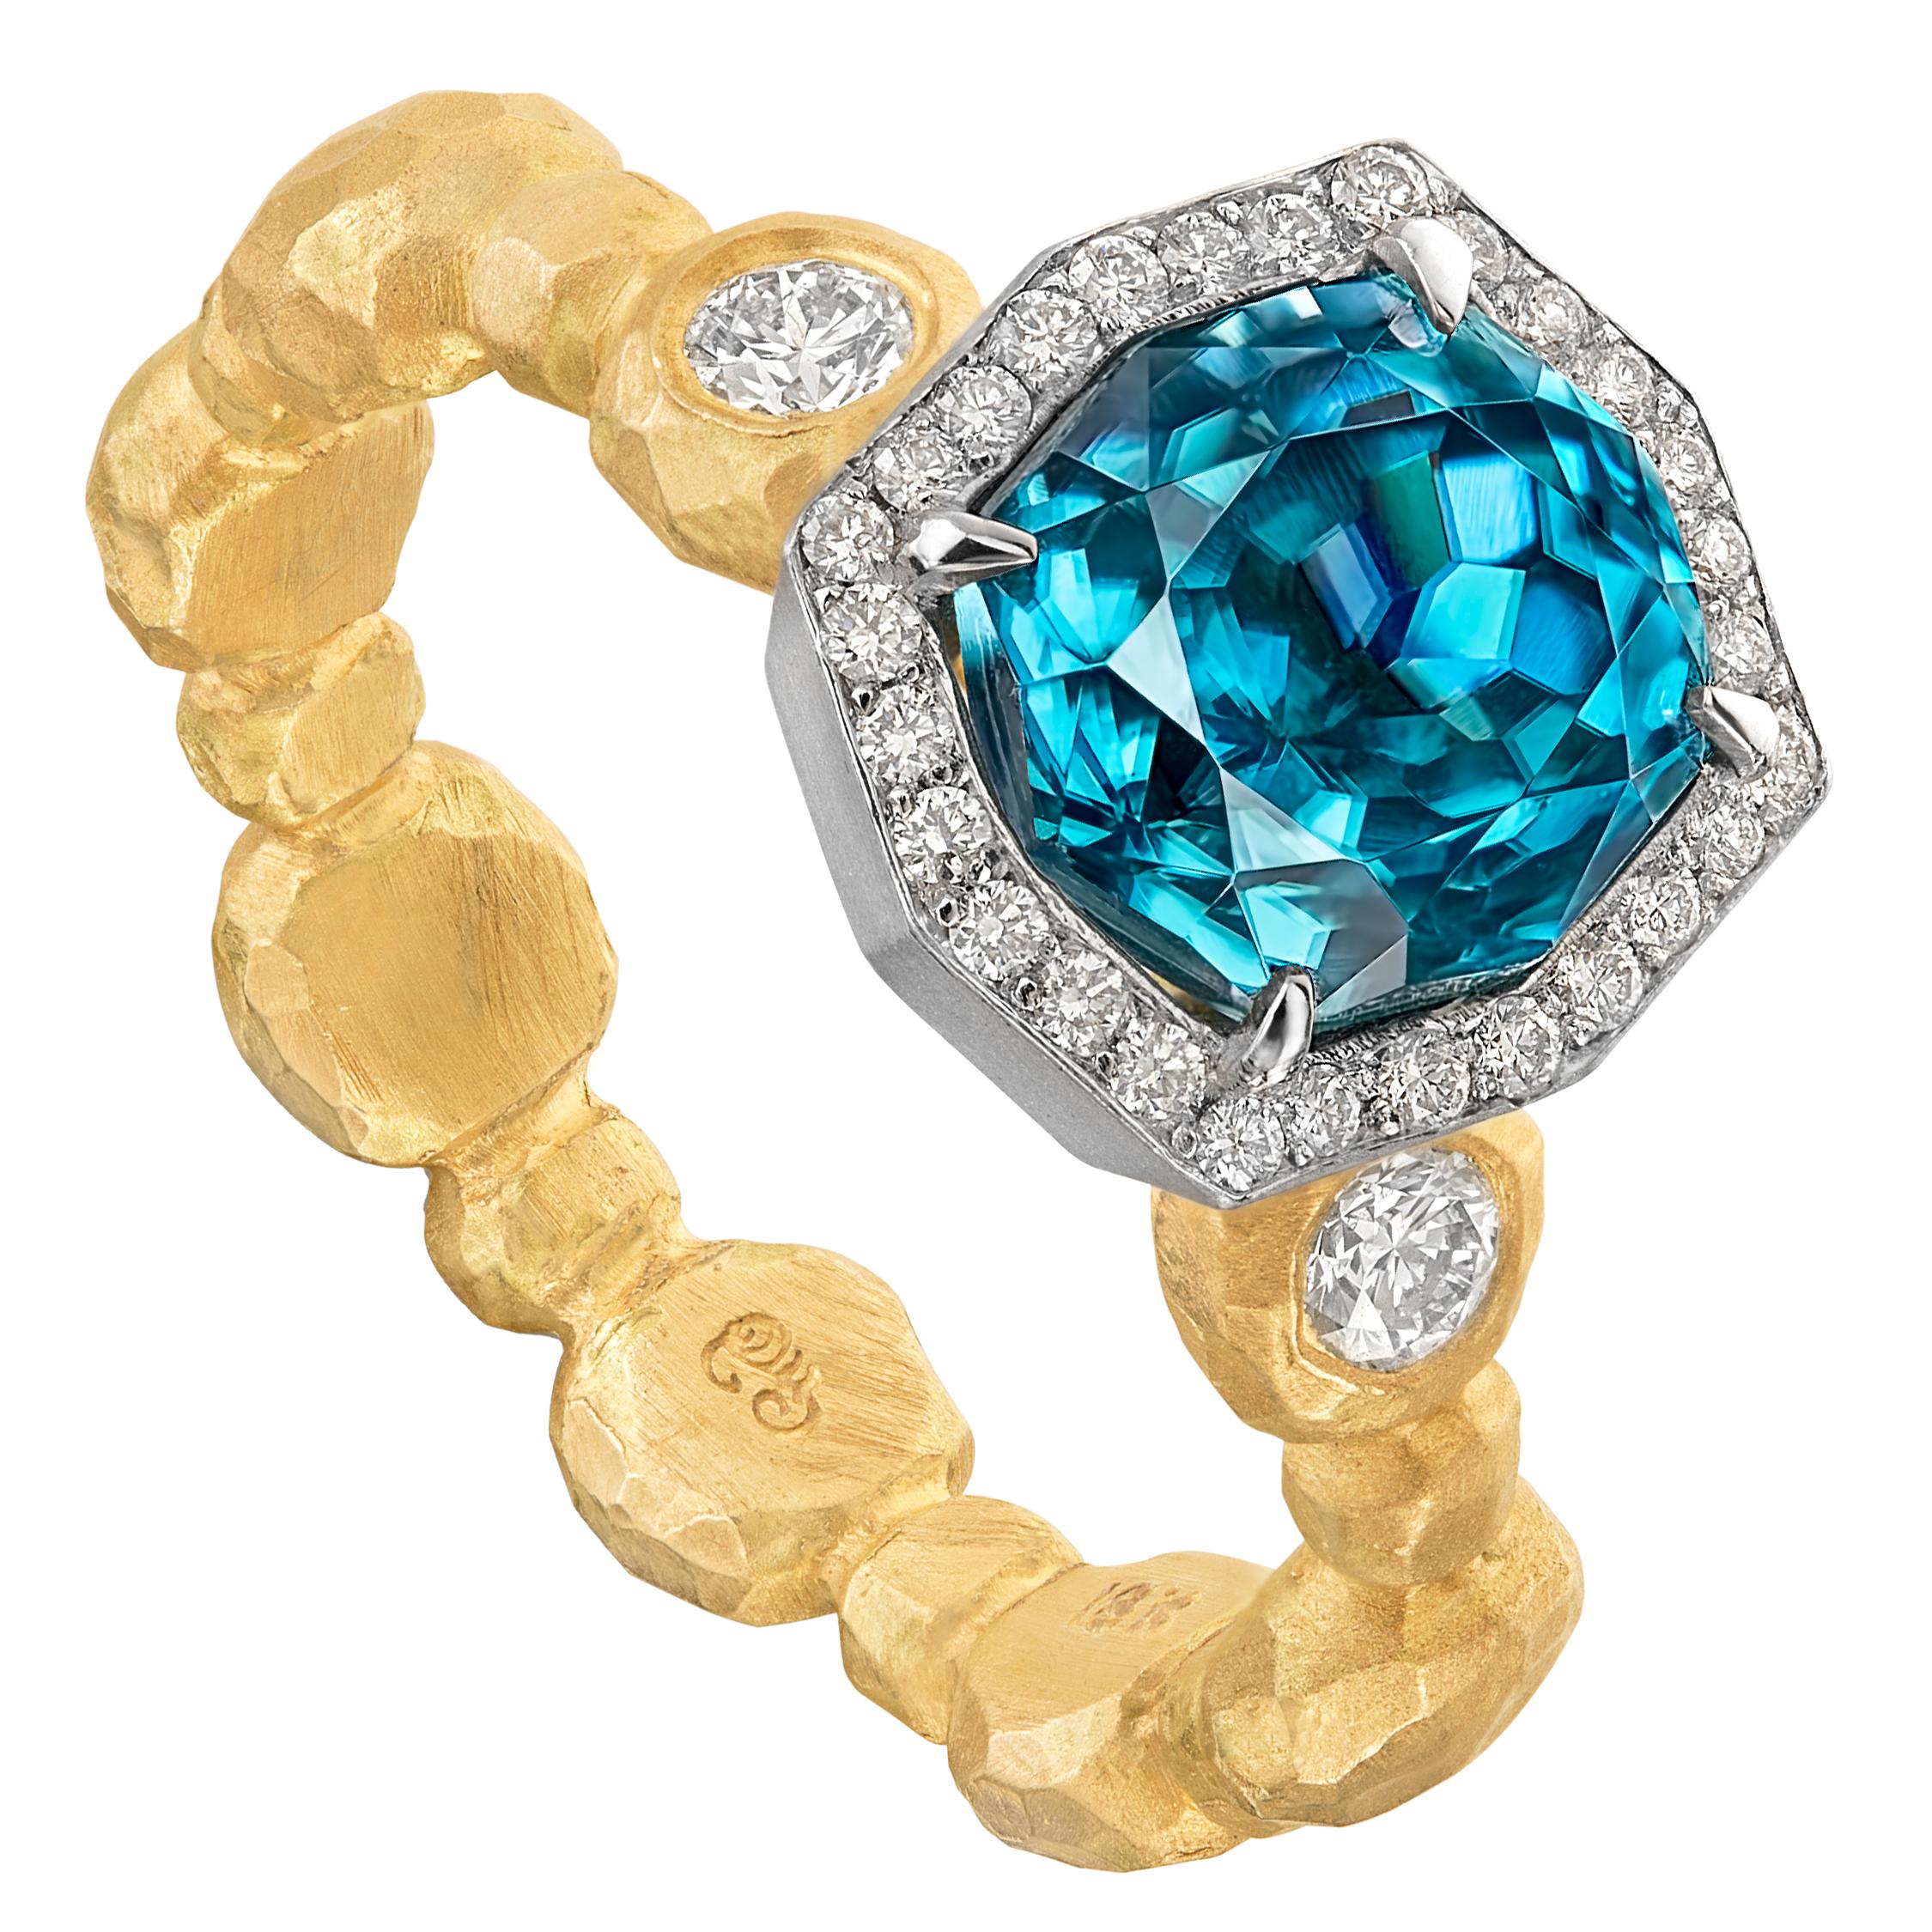 Einzigartiger Gold- Crush-Ring mit blauem Zirkon und weißem Diamant, Pamela Froman